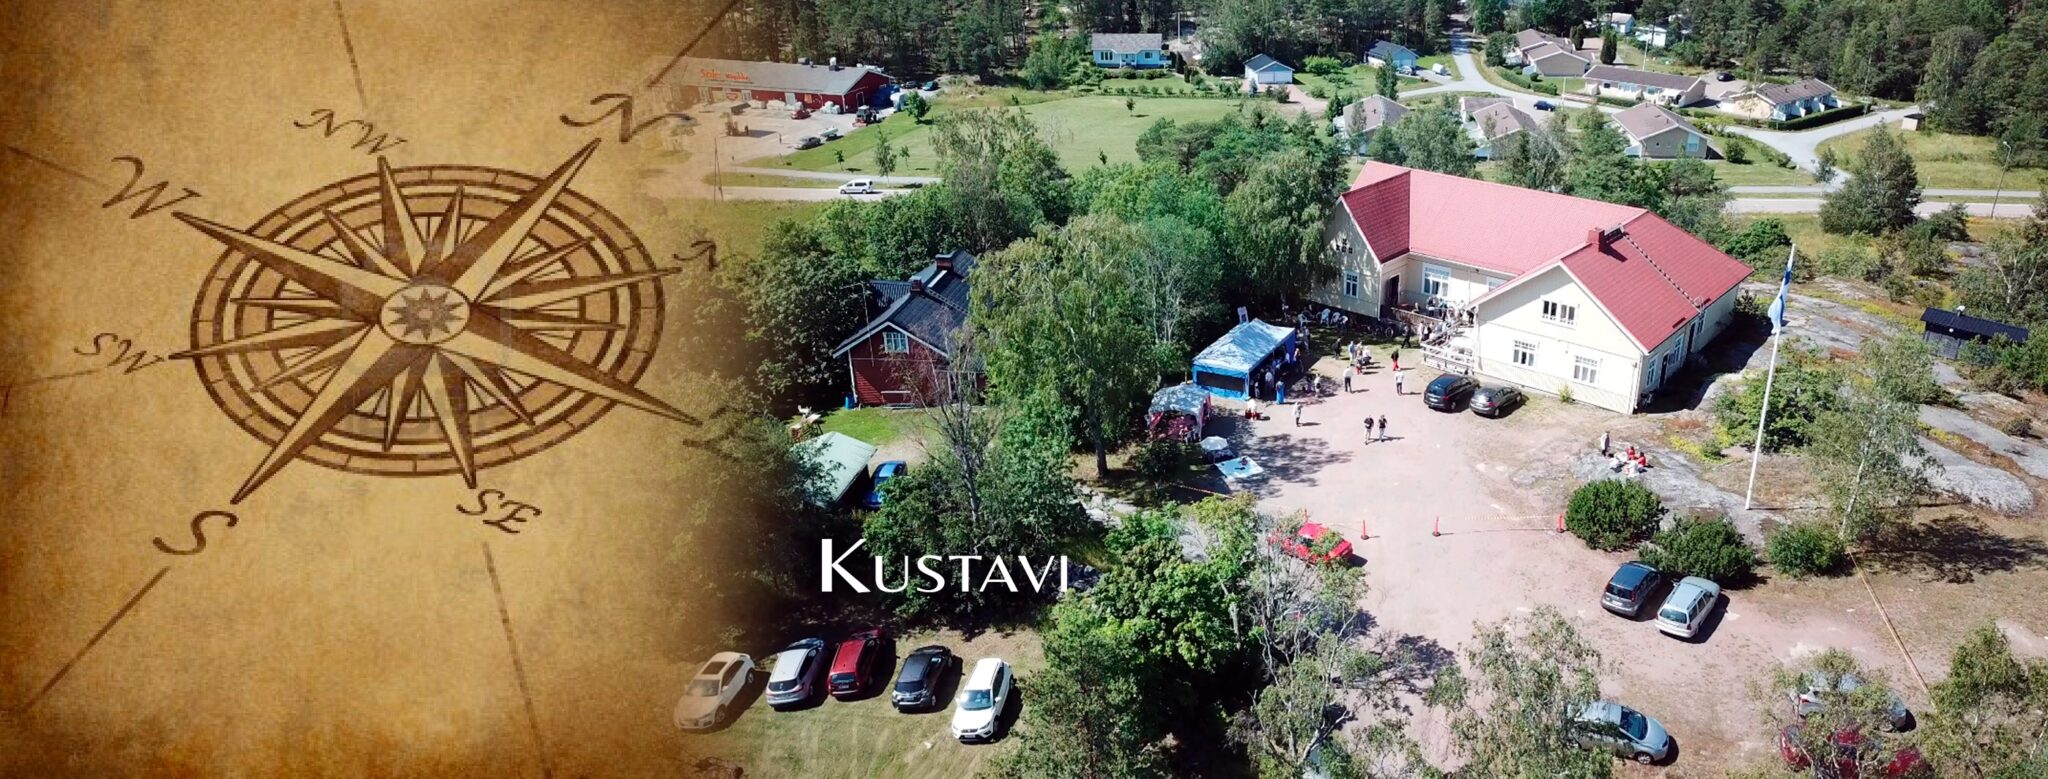 Varsinais-Suomen kylät